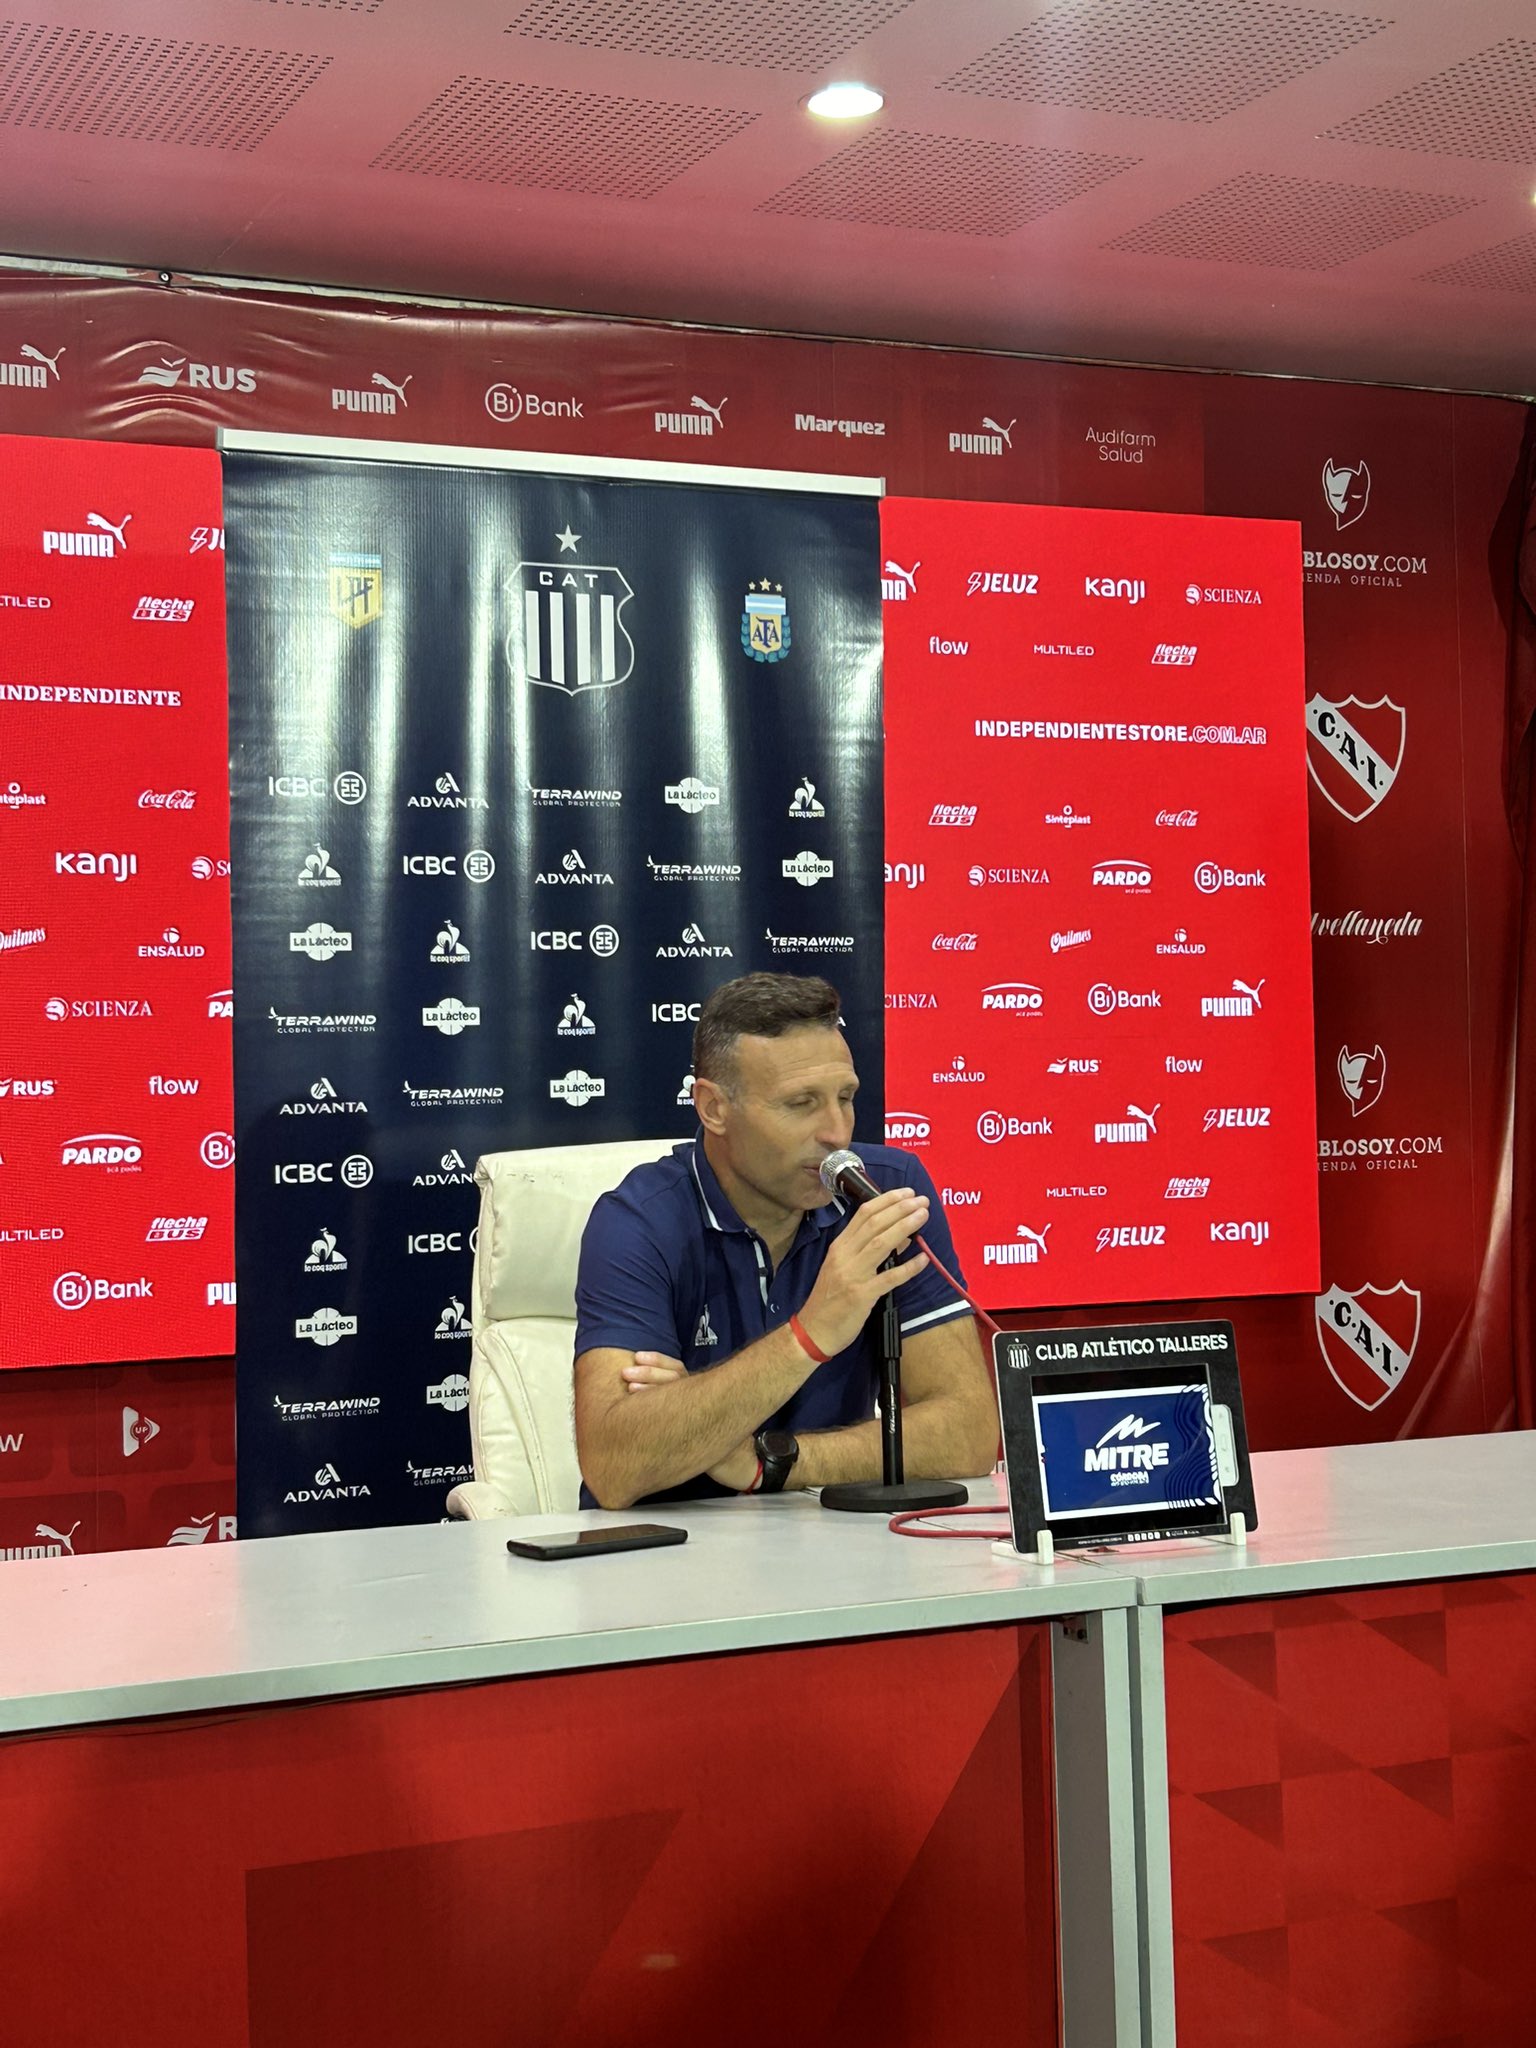 Ribonetto: el "orgullo" por su equipo y por qué puso suplentes contra Independiente Rivadavia | Canal Showsport